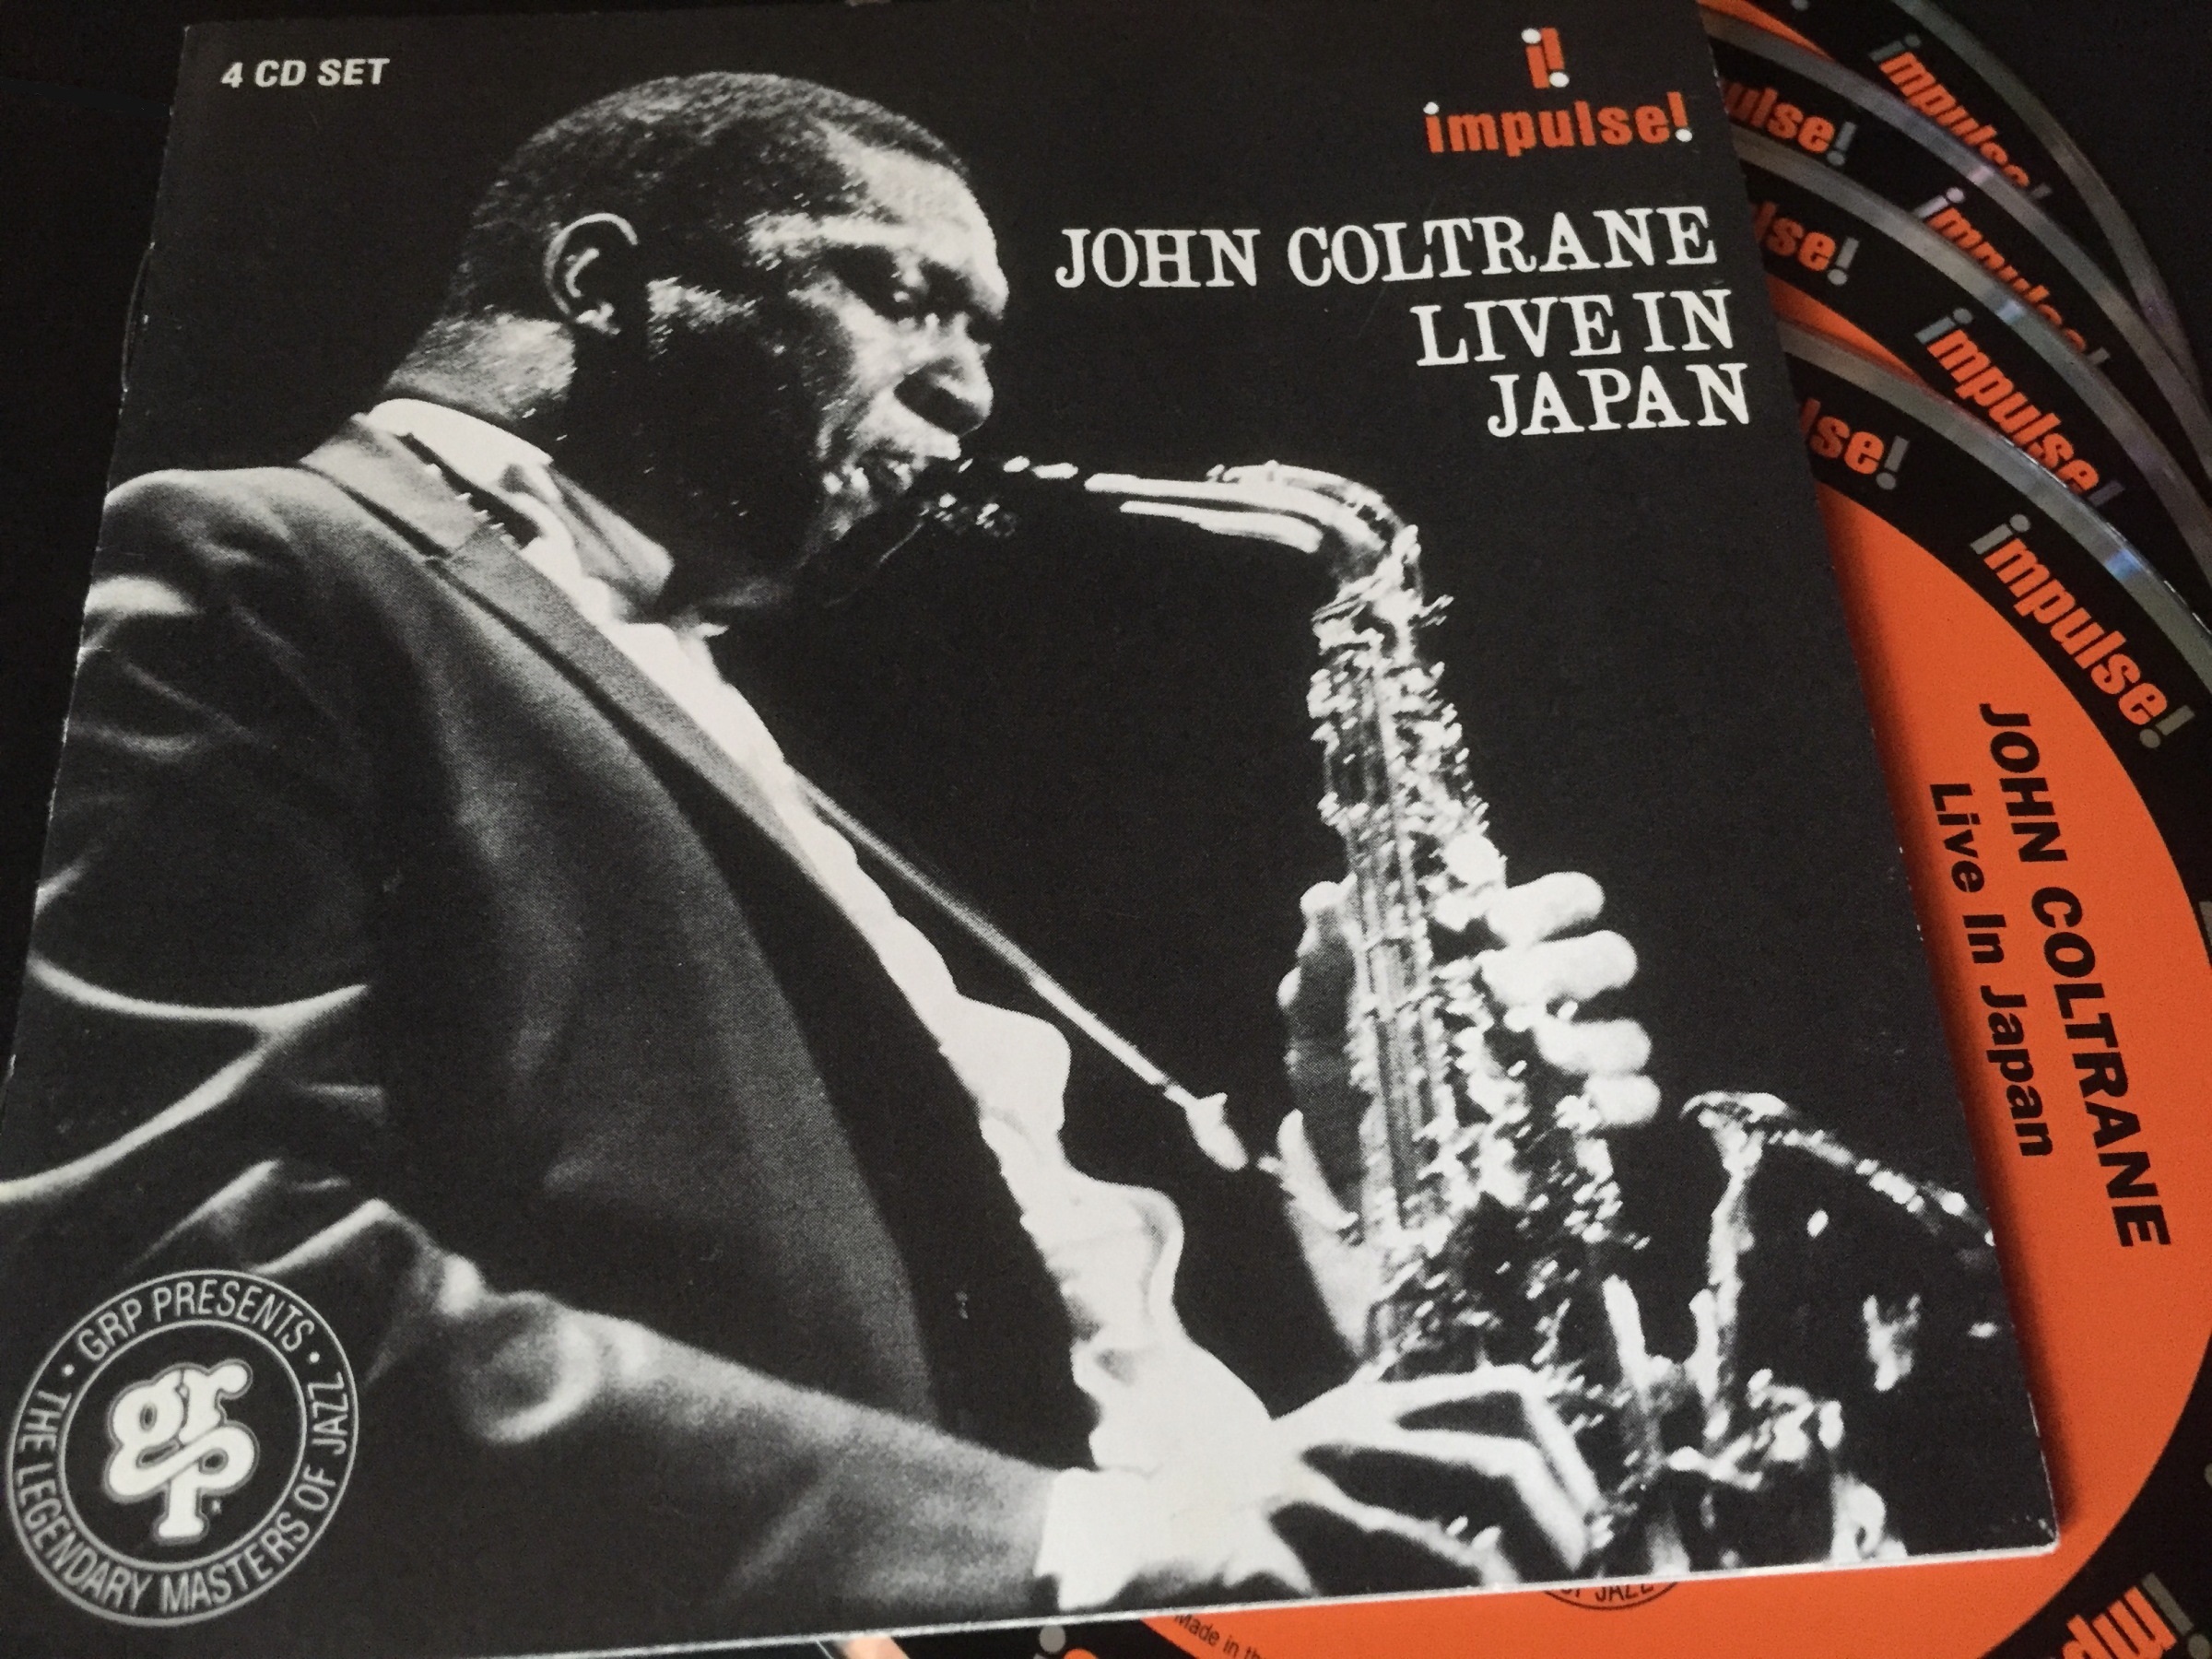 John Coltrane / Live In Japan: 日々JAZZ的な生活